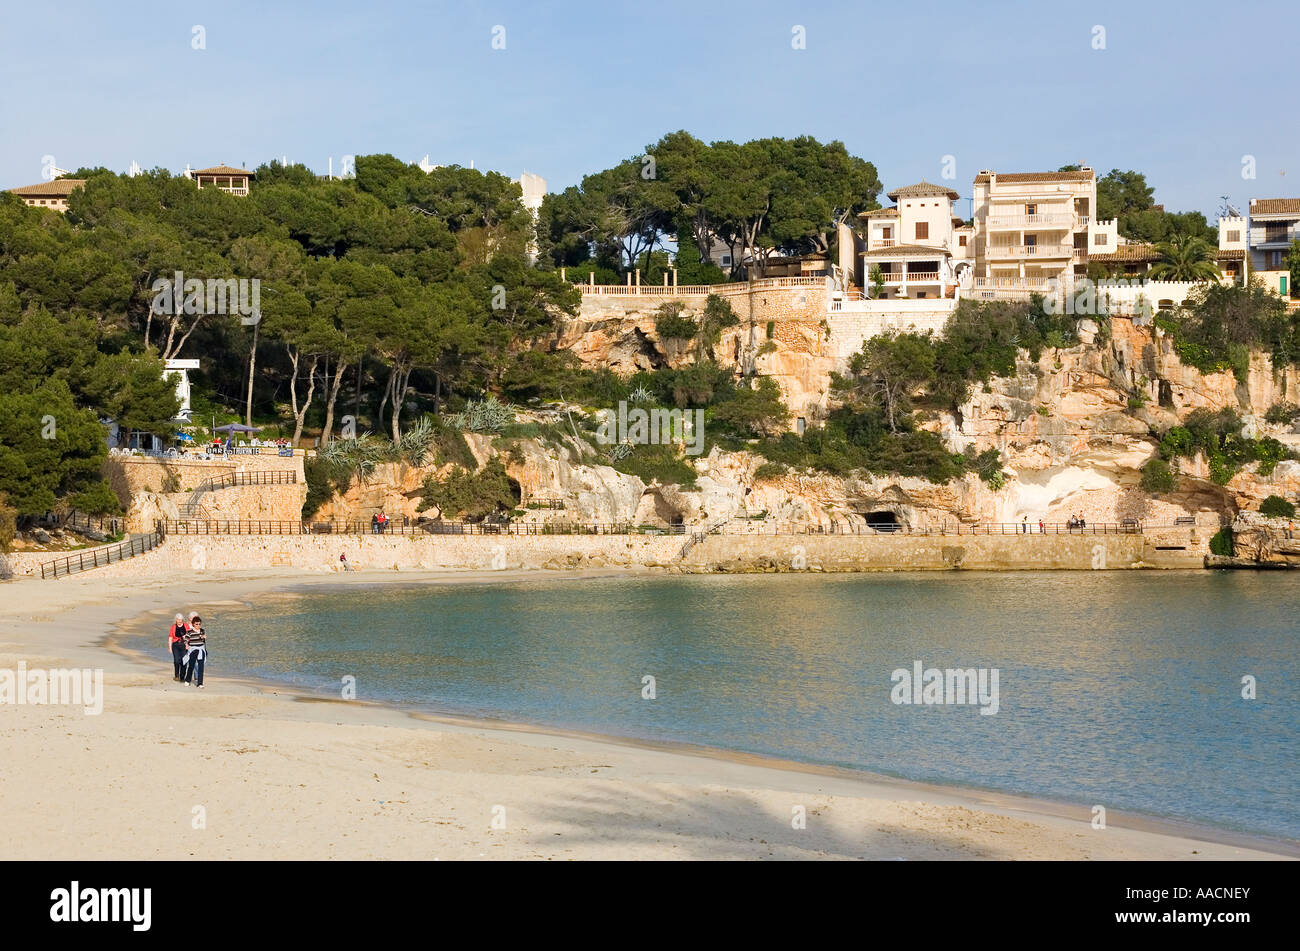 La plage de Cala Millor, Majorque, Baleares, Espagne Banque D'Images